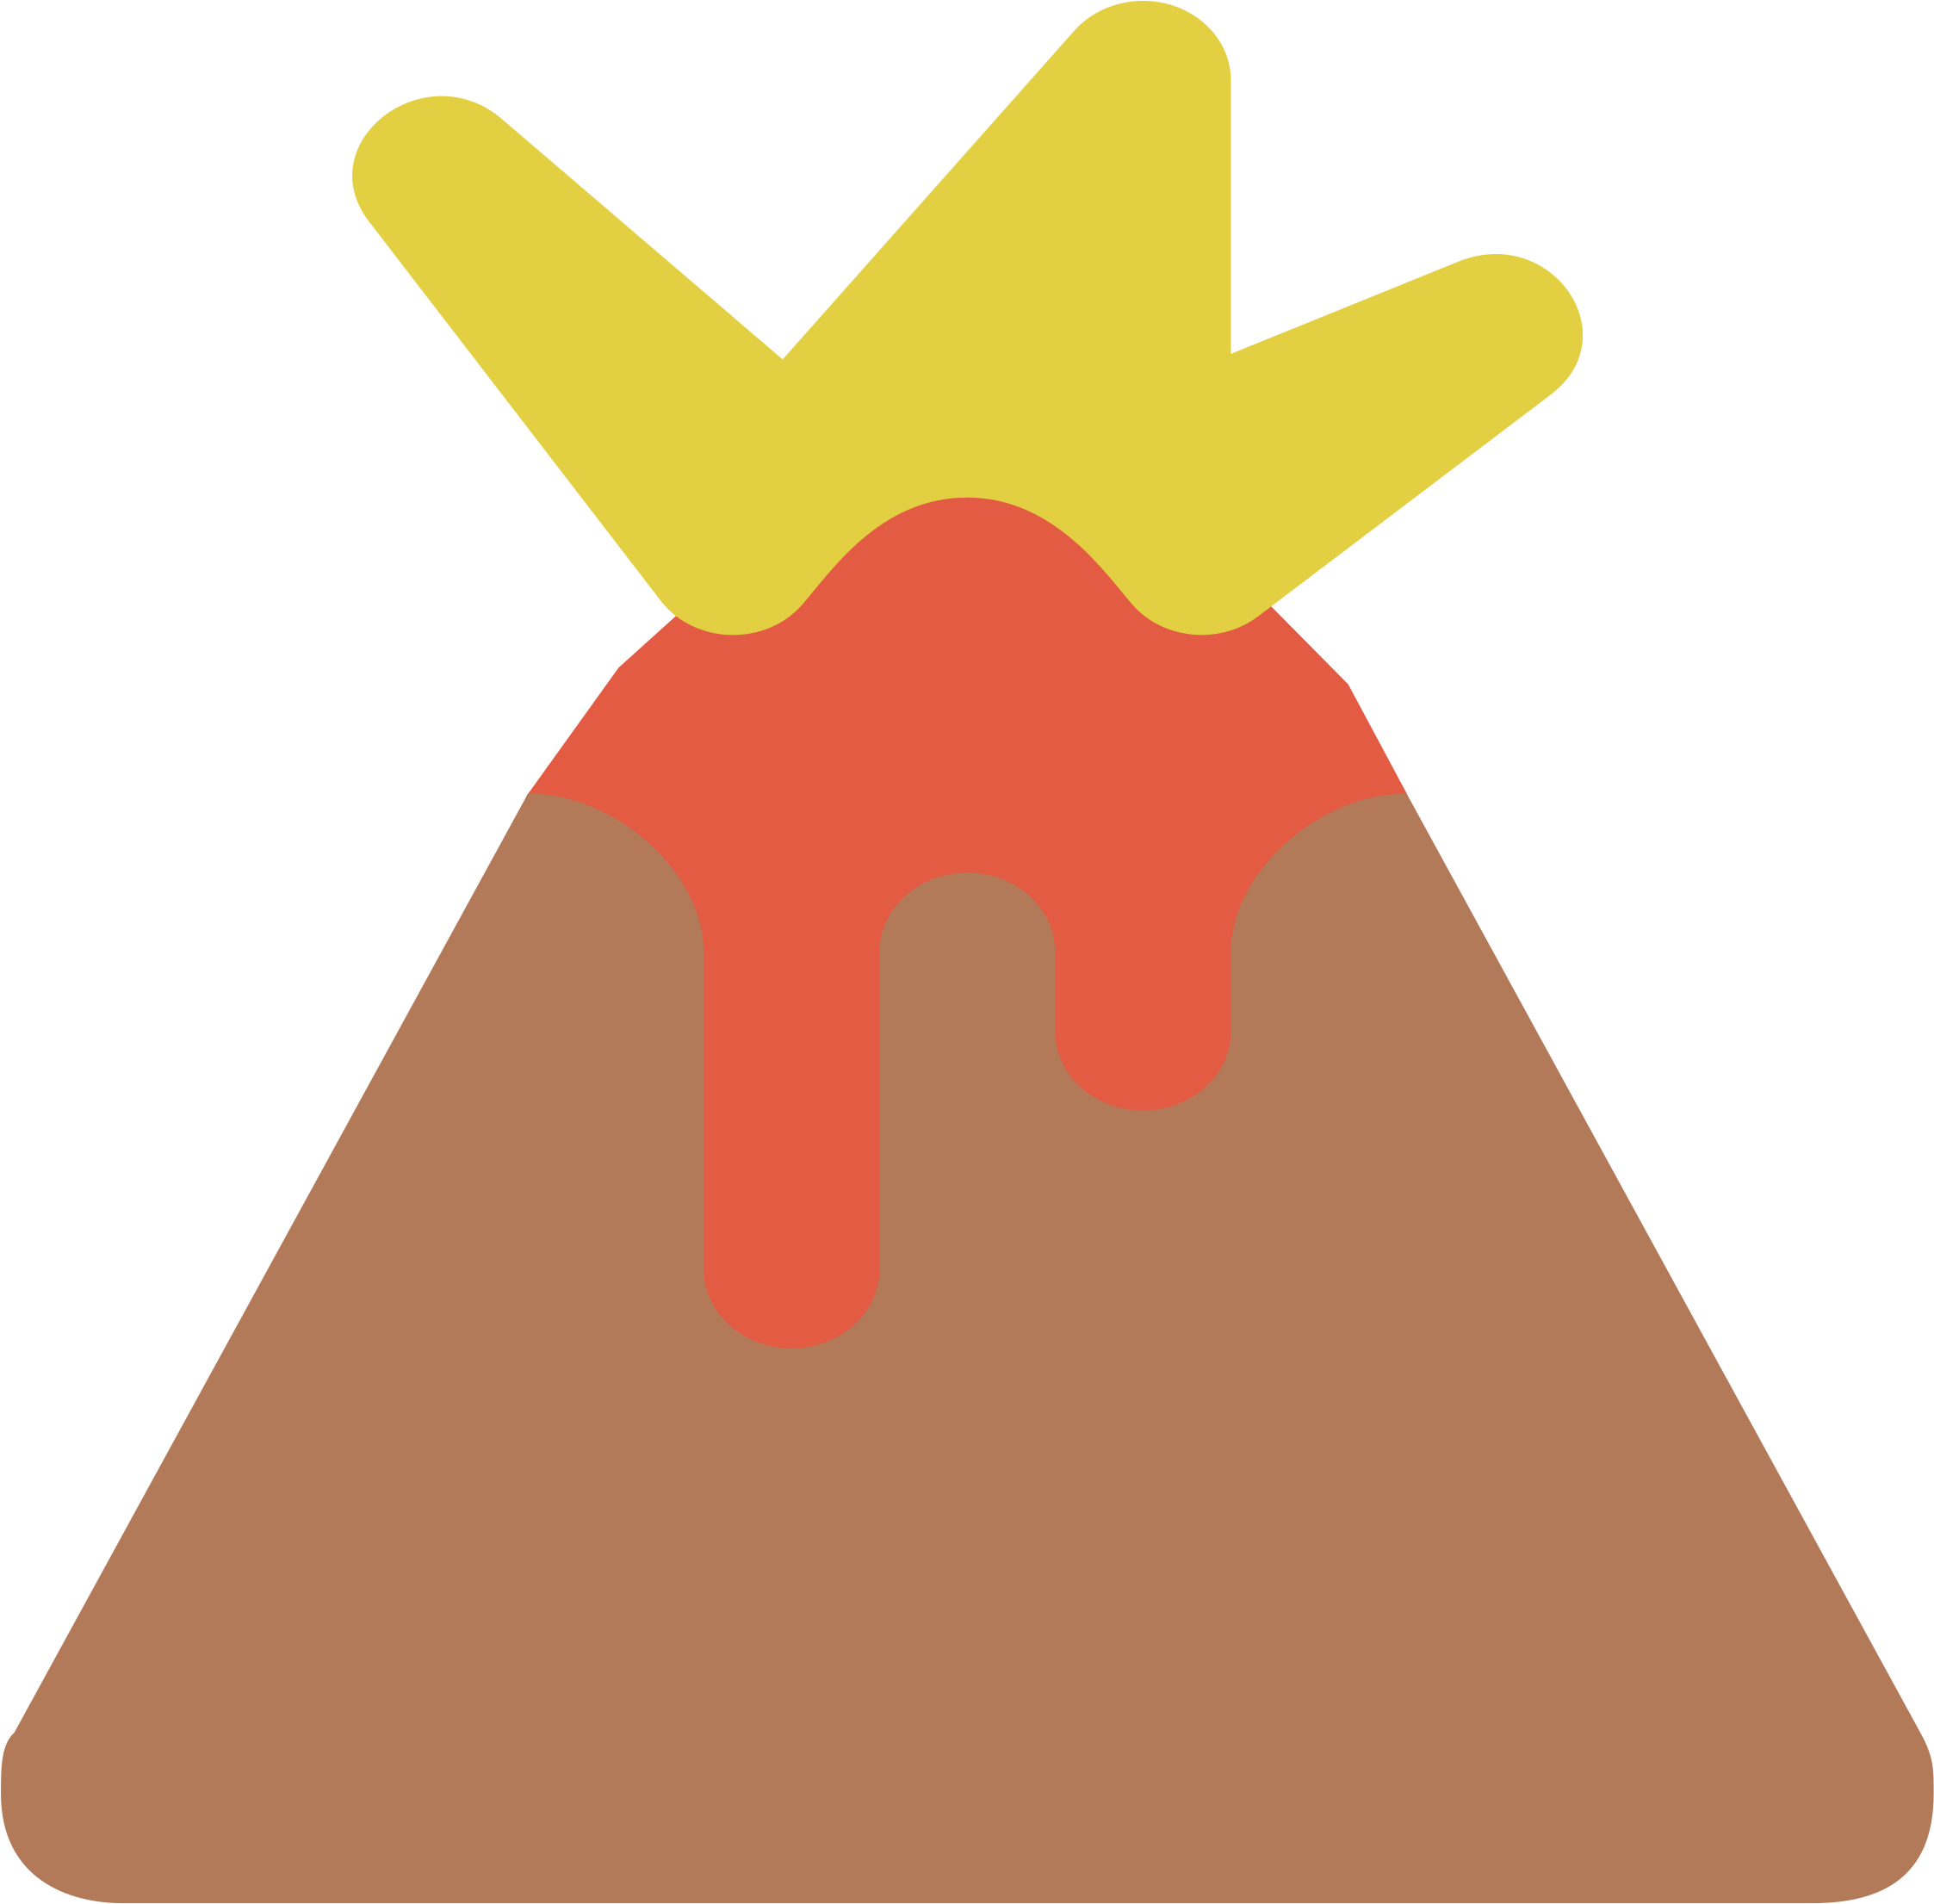 Erupting Volcano Icon